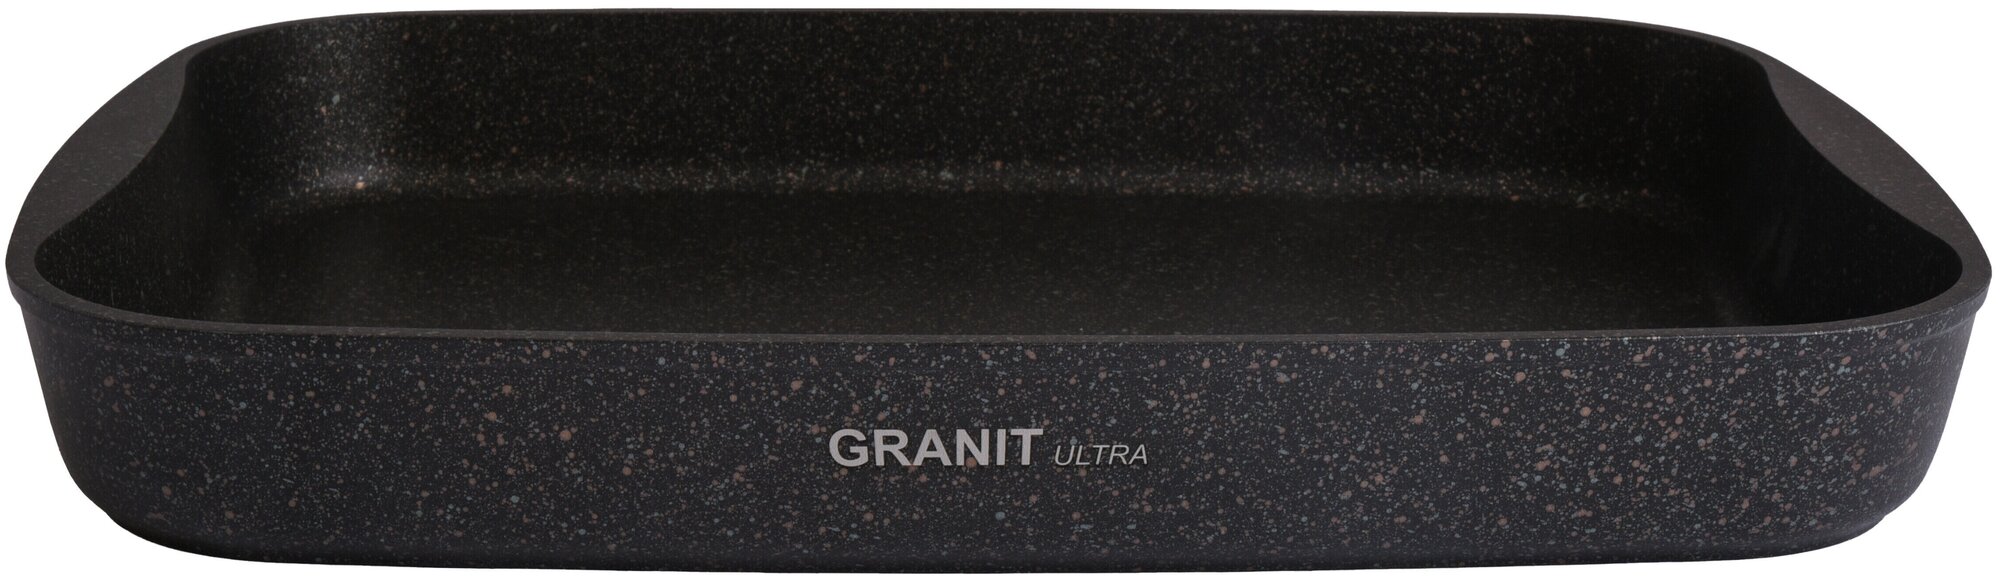 Противень универсальная Kukmara Granit Ultra пга01а/пгг01а/пго01а